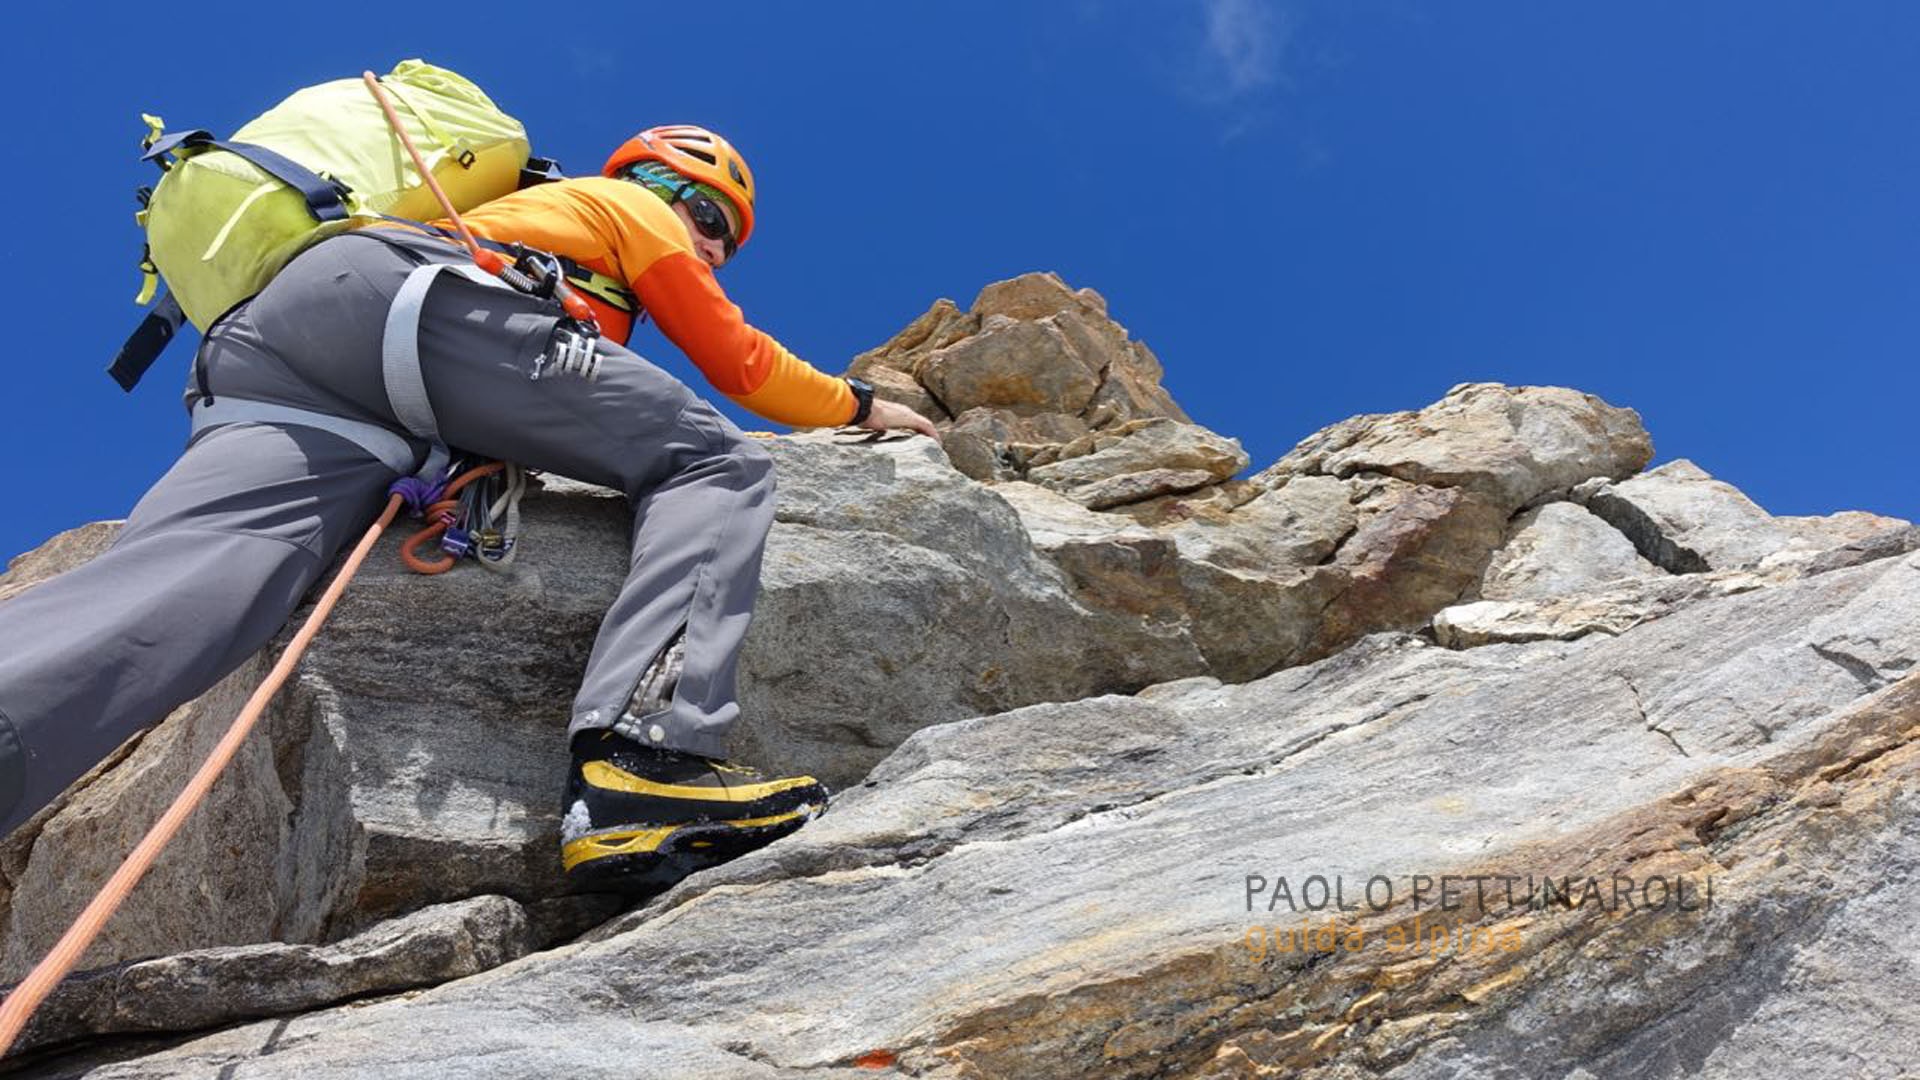 io - 1 - alpinismo_paolo pettinaroli guida alpina